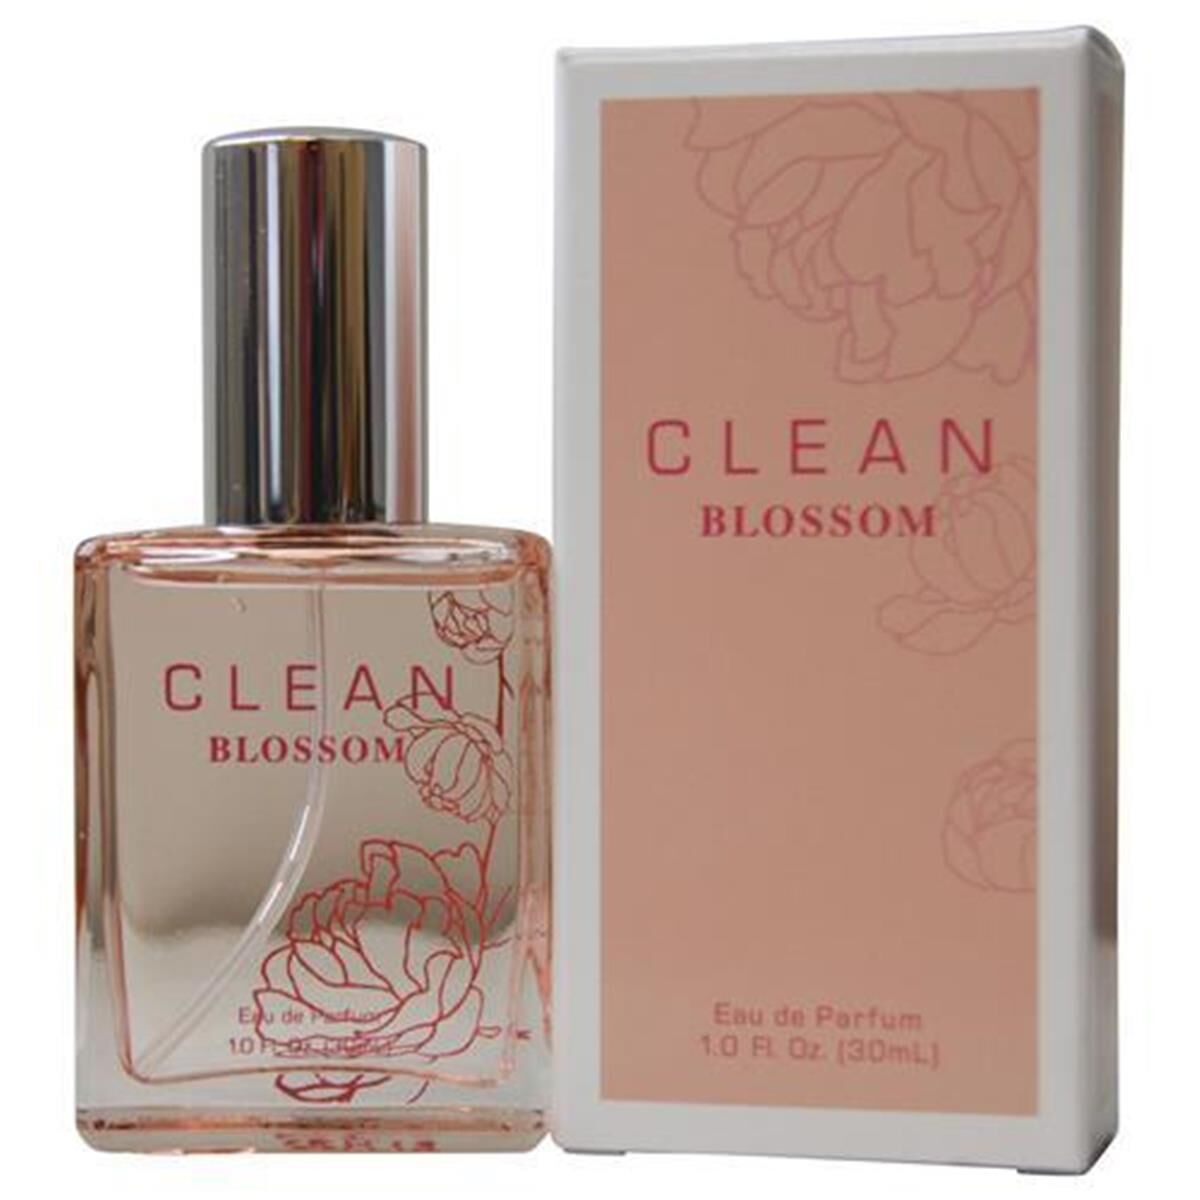 Clean Blossom 287295 Eau De Parfum Spray - 1 oz One Size female